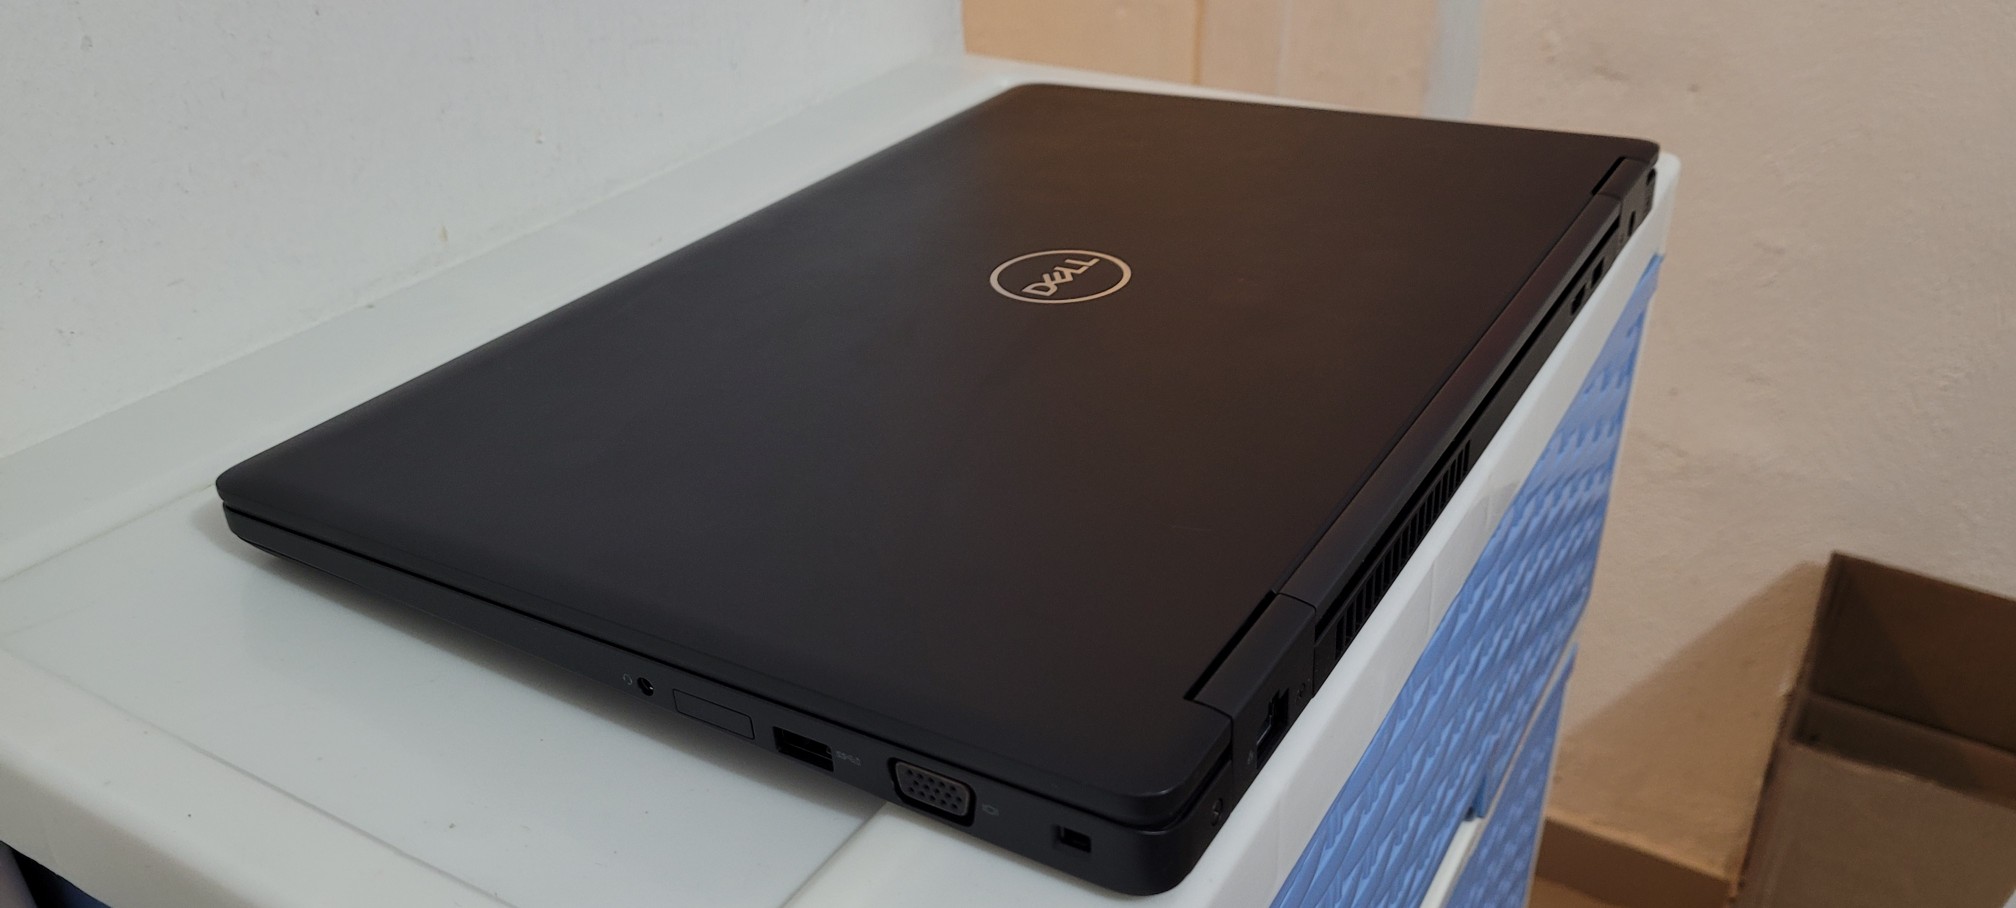 computadoras y laptops - New Dell 5570 17 Pulg Core i7 6ta Ram 16gb ddr4 SSD 512GB ATY RADEON R7 2gb 2